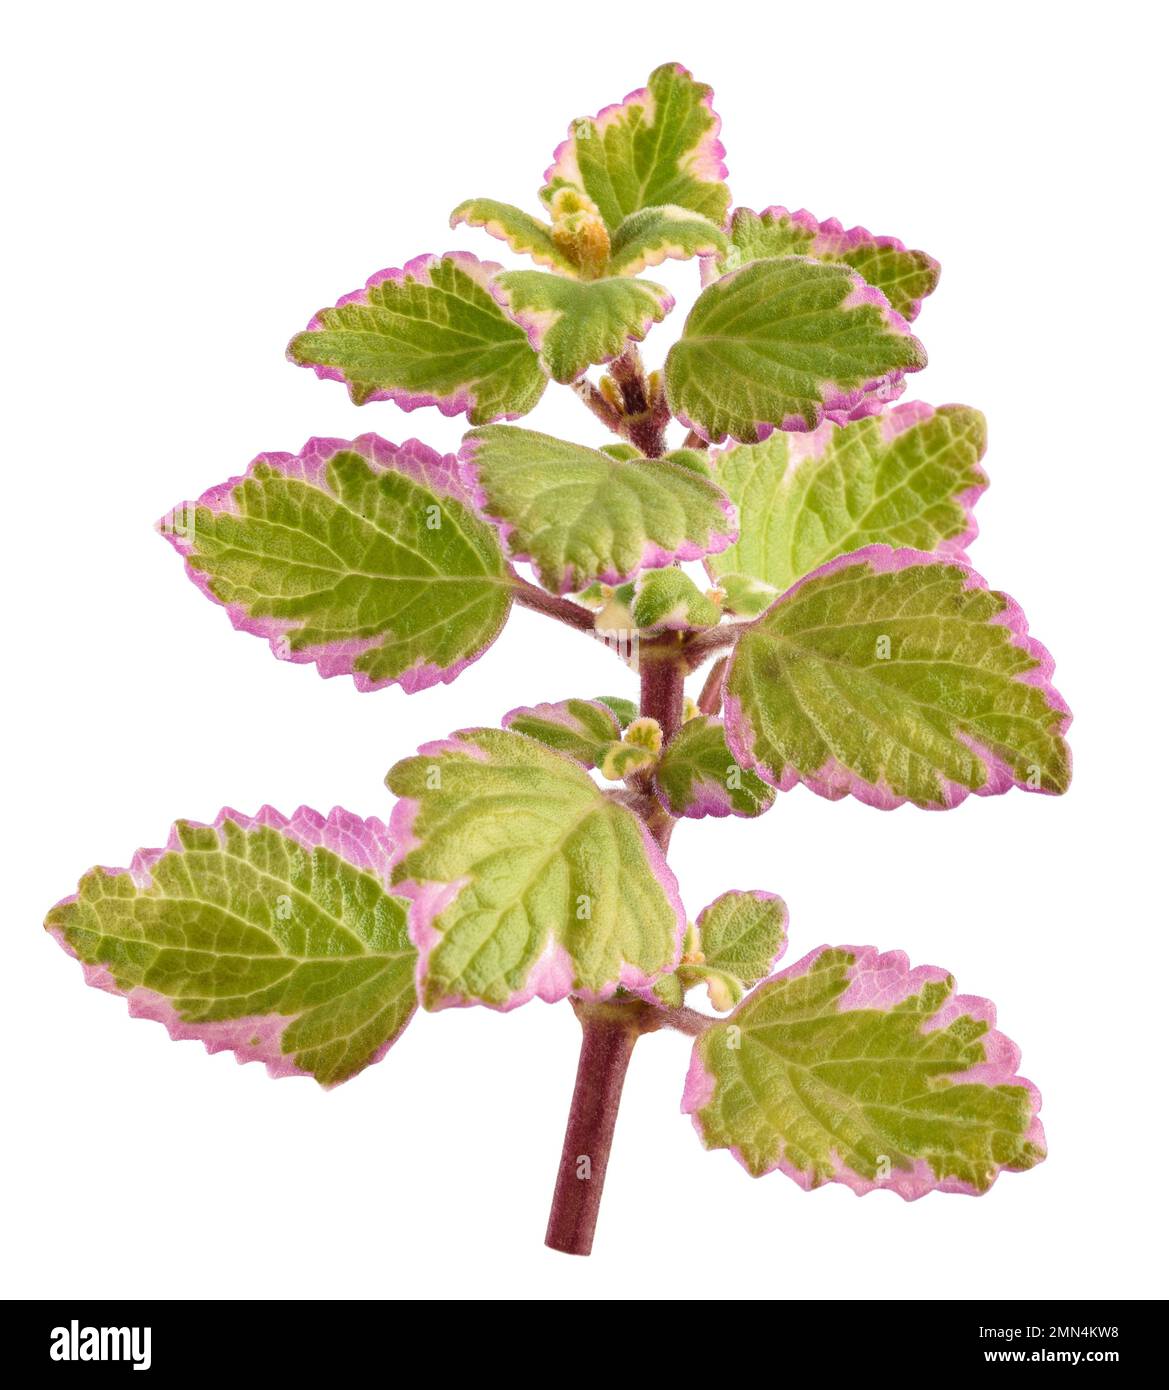 Swedish Ivy sprig isolated on white background Stock Photo